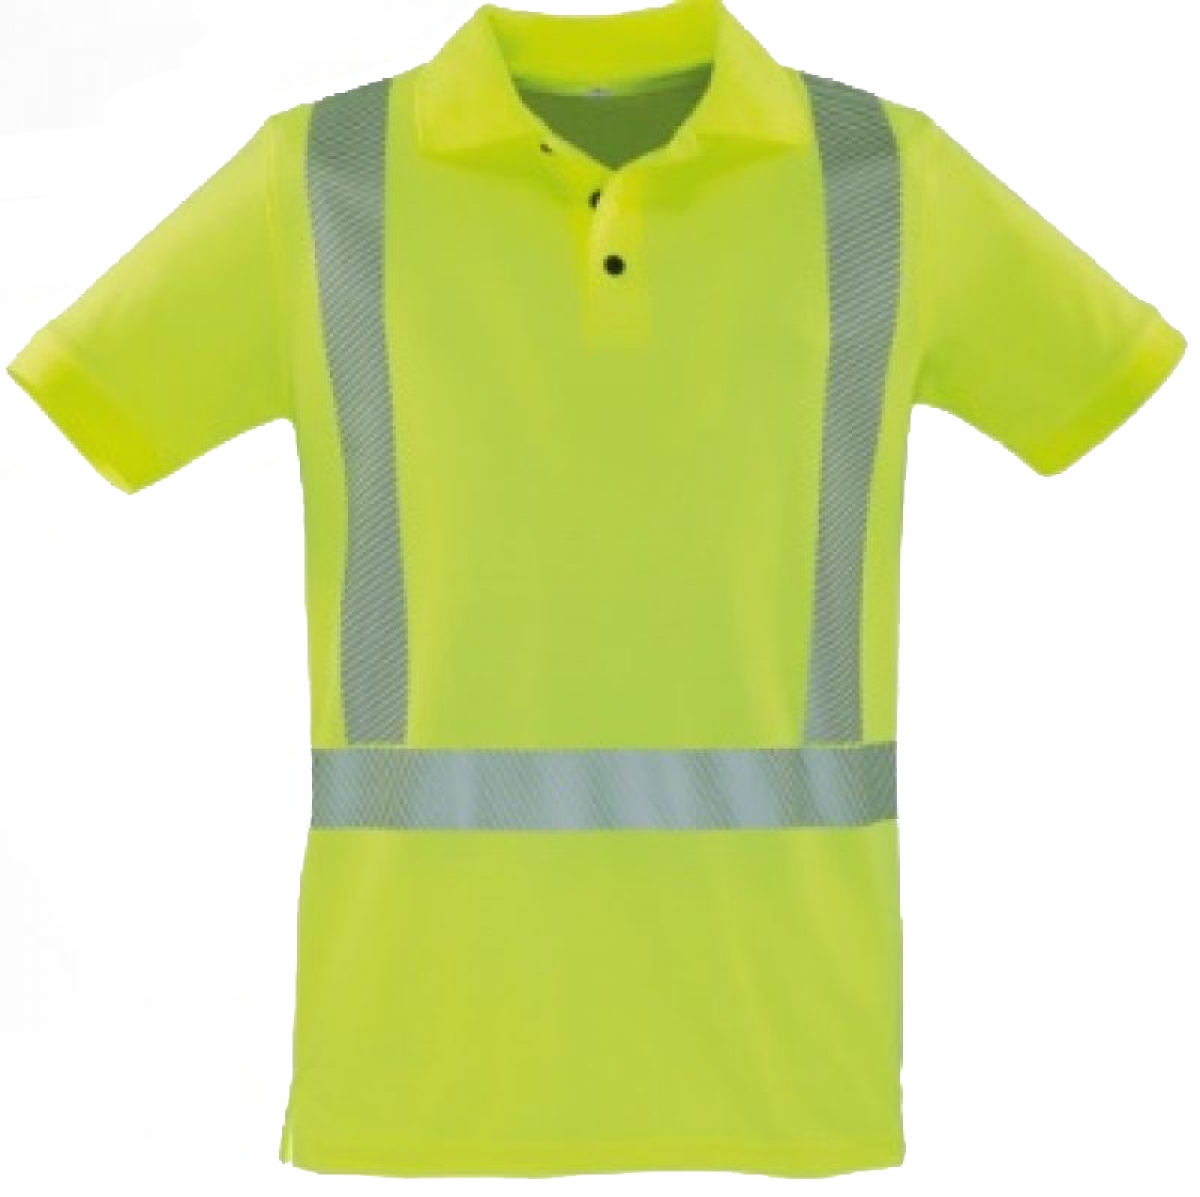 ROFA-Warnschutz, Warnschutz-Poloshirt, ca. 185 g/m, leuchtgelb